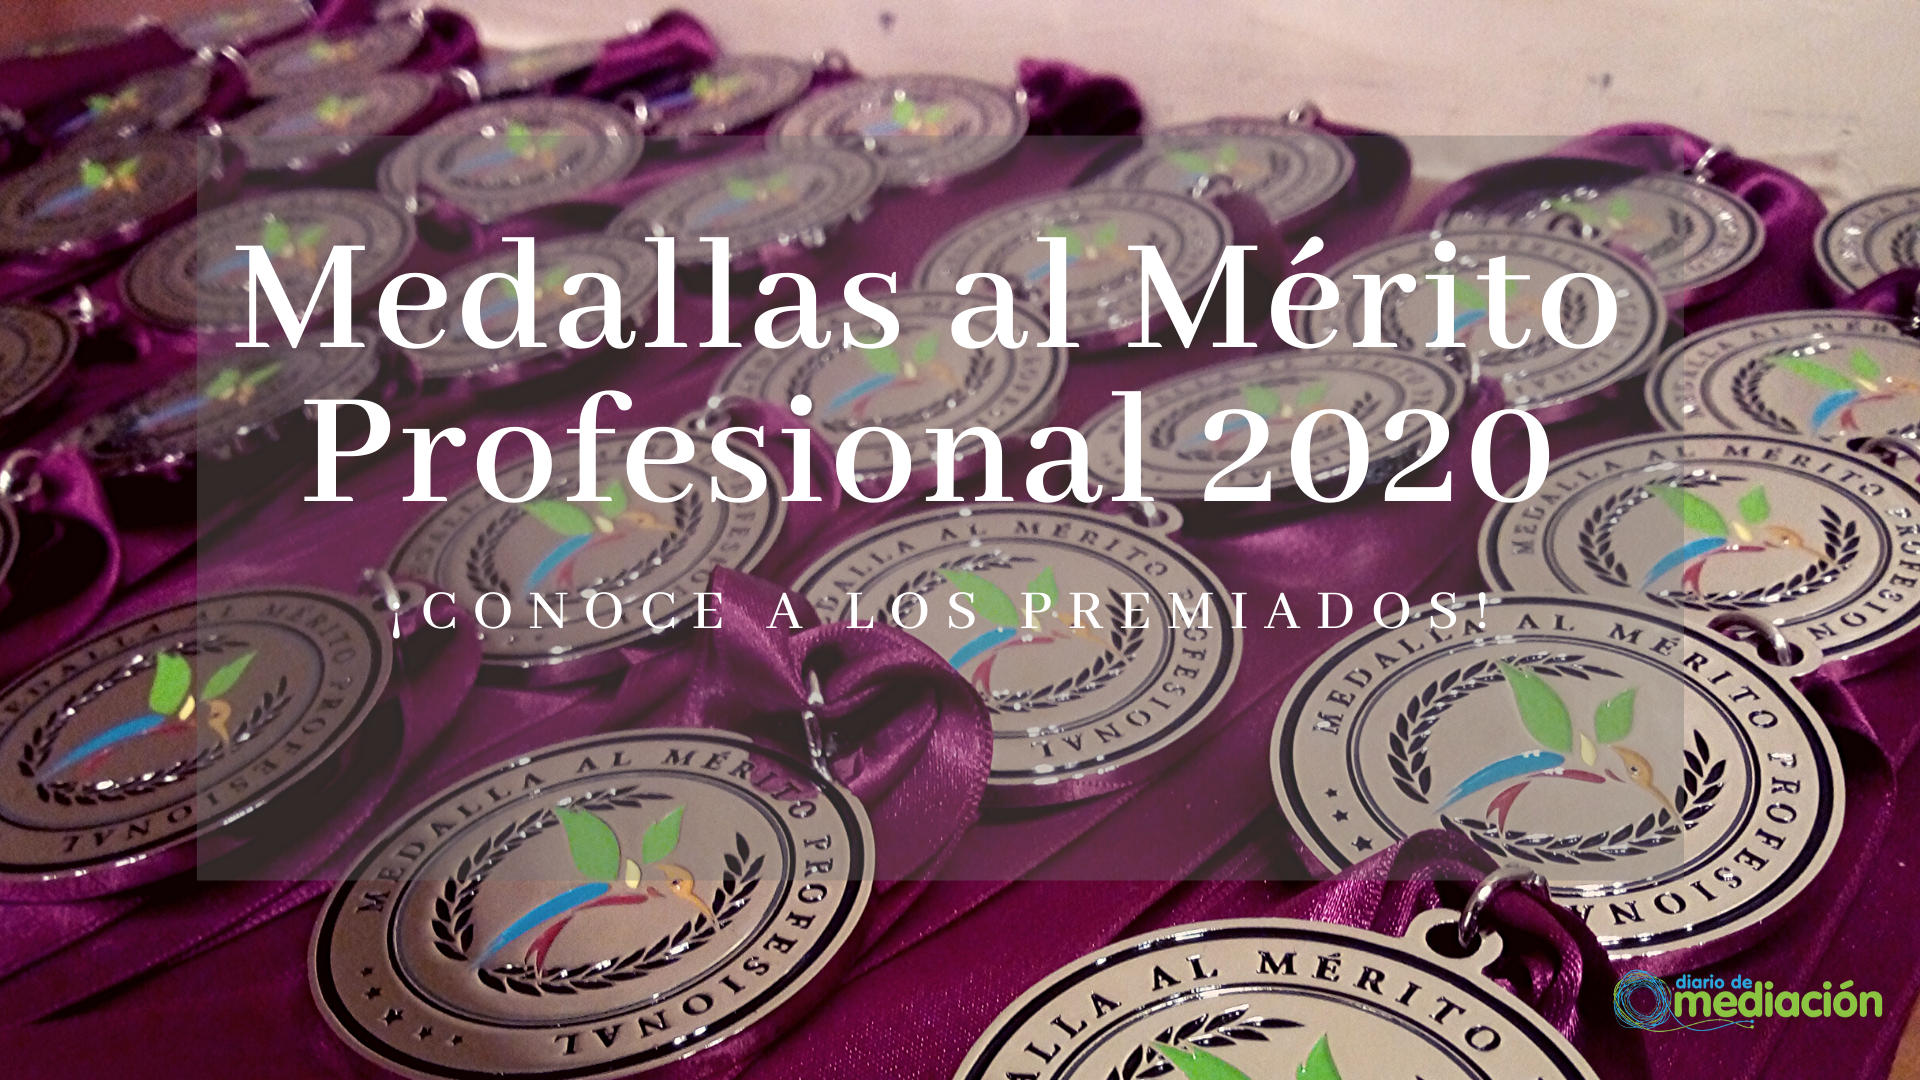 premiados medallas merito profesional 2020